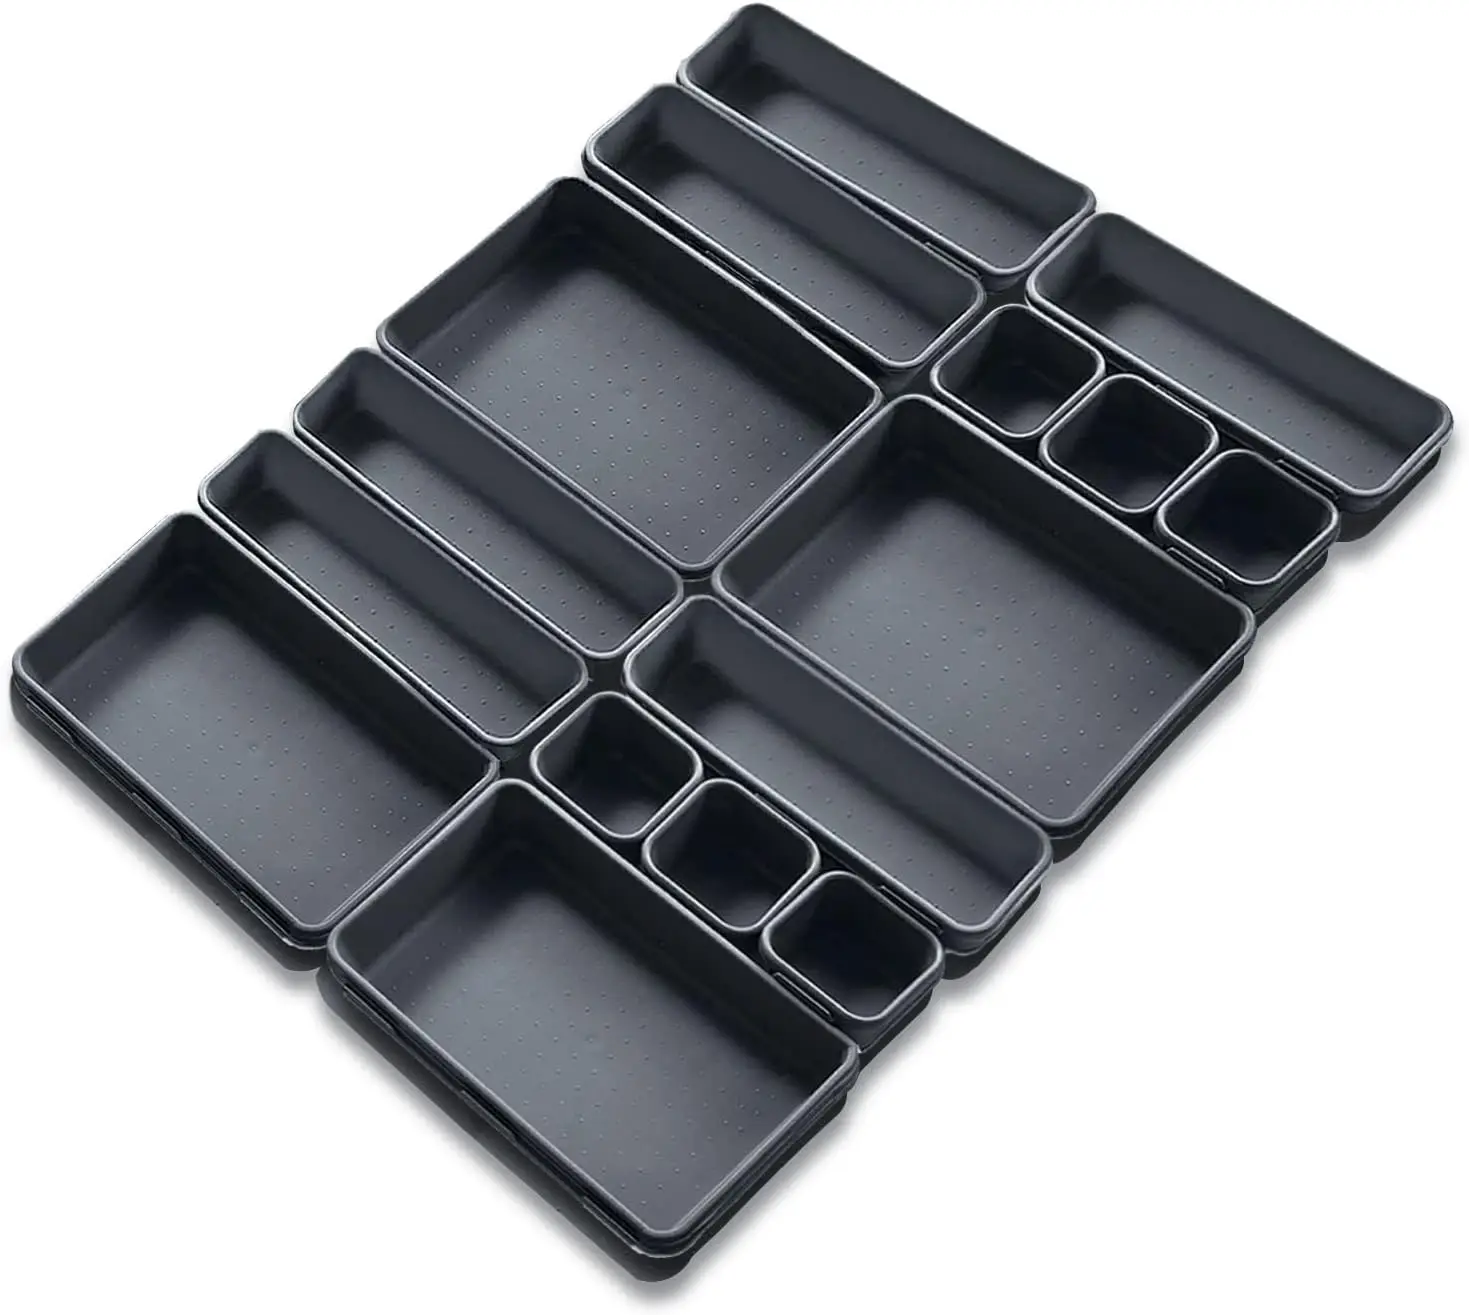 

Caja de almacenamiento de escritorio de 16 piezas organizador de cajones de plástico para oficina organizador de cajones de pl